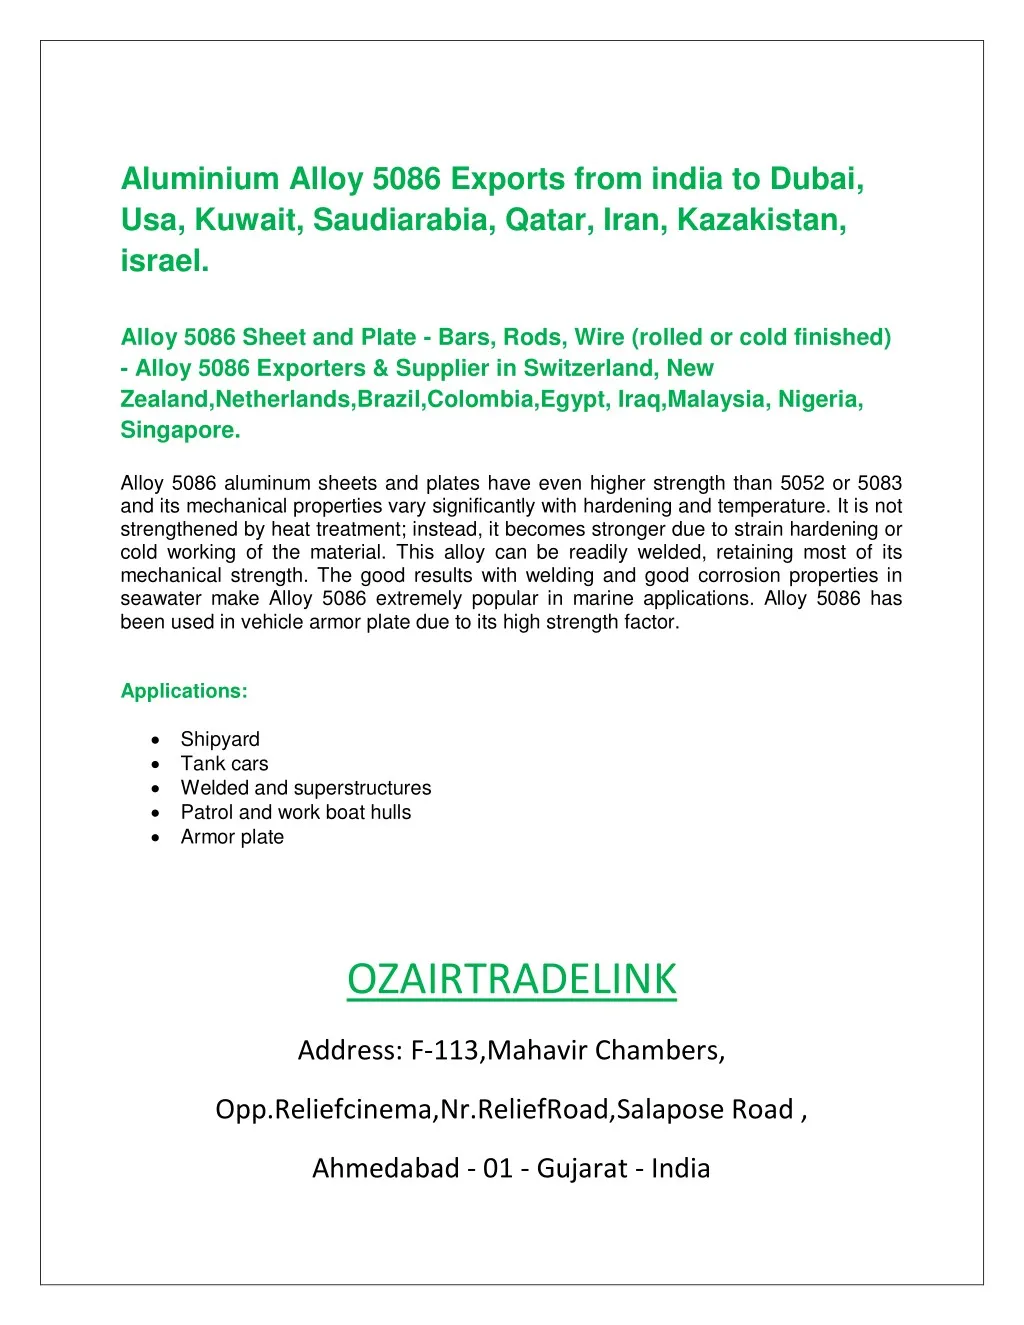 aluminium alloy 5086 exports from india to dubai